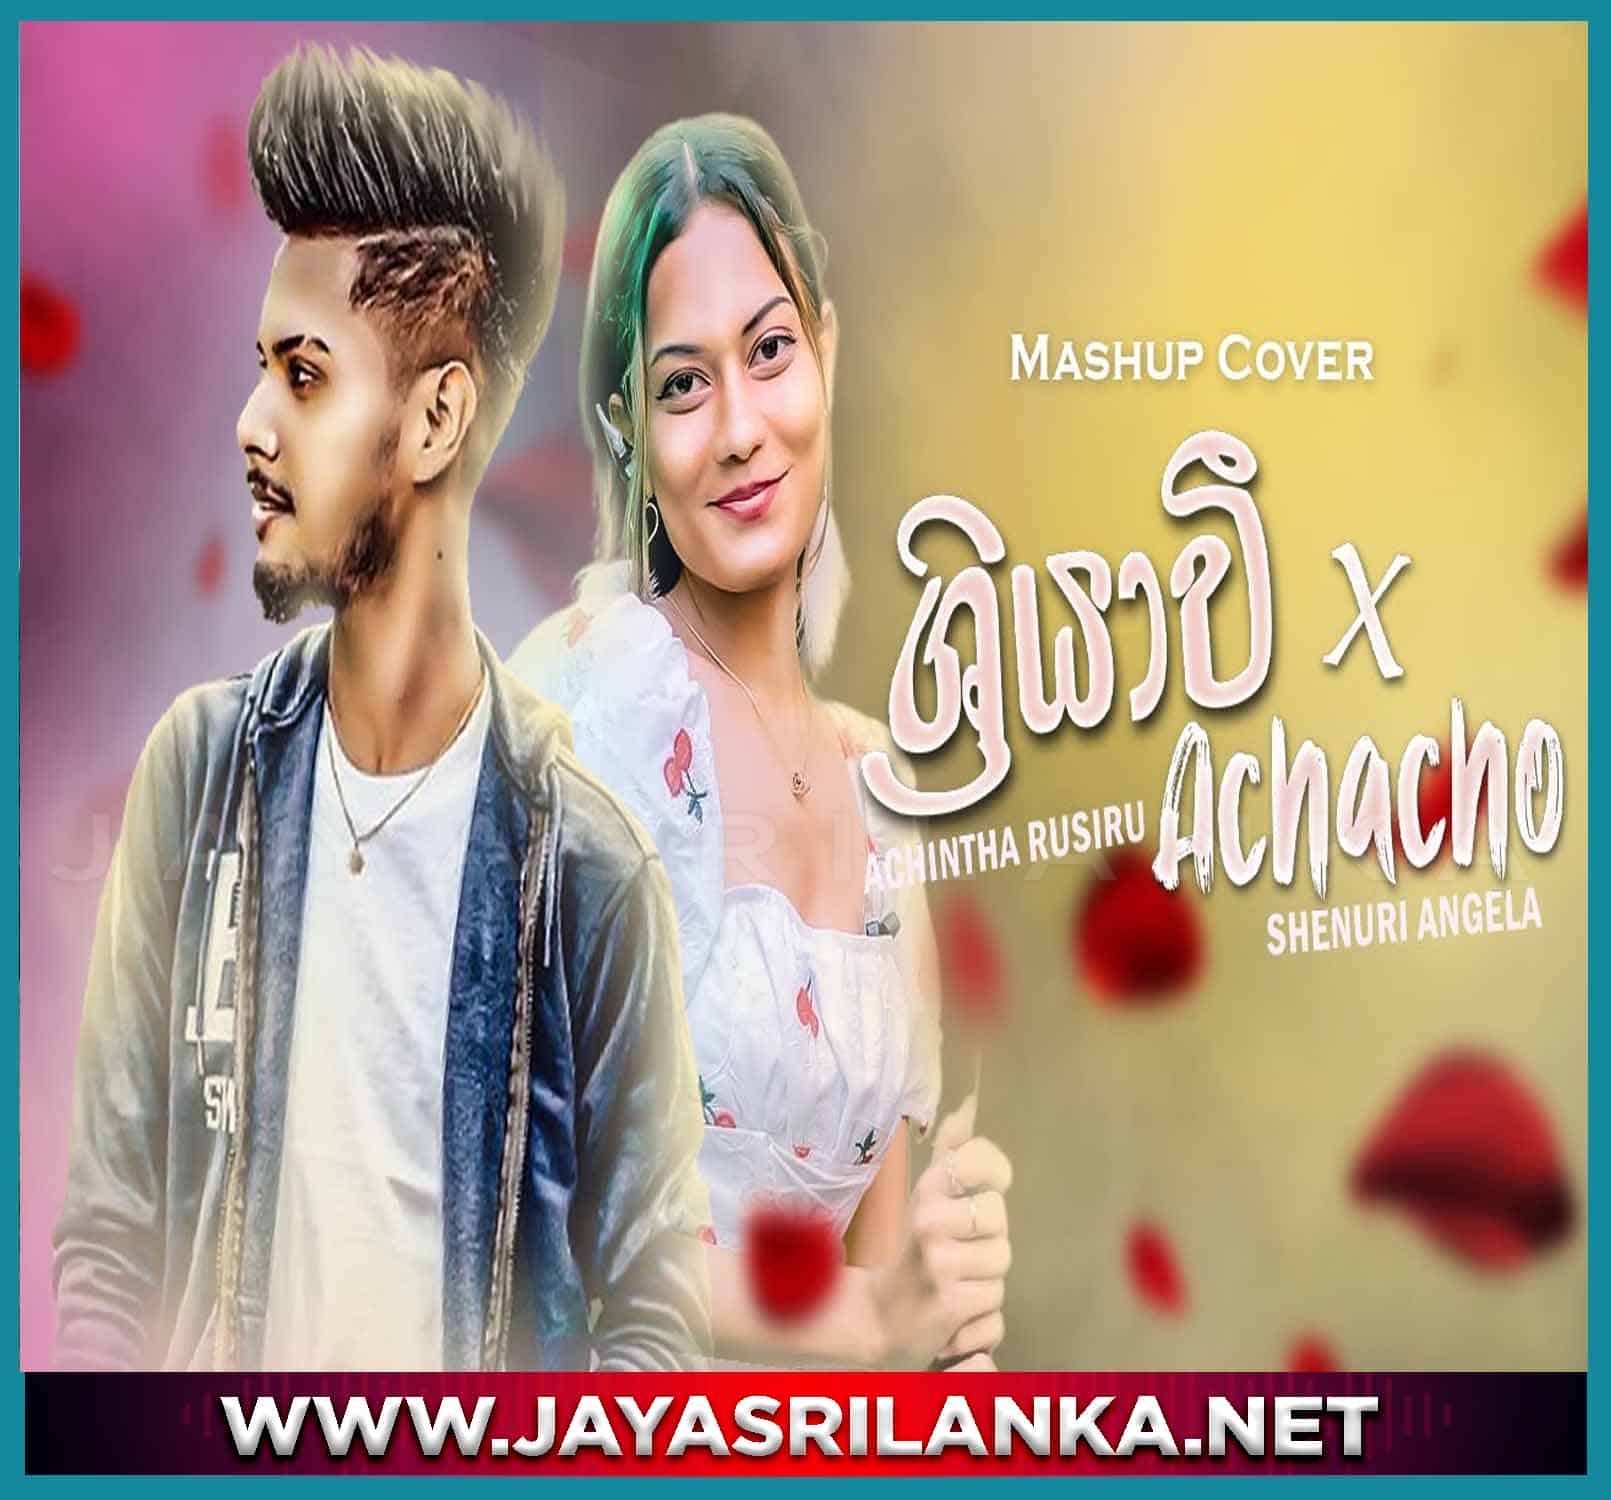 Sriyawee x Achacho Mashup Cover ( Sinhala & Tamil  Version )